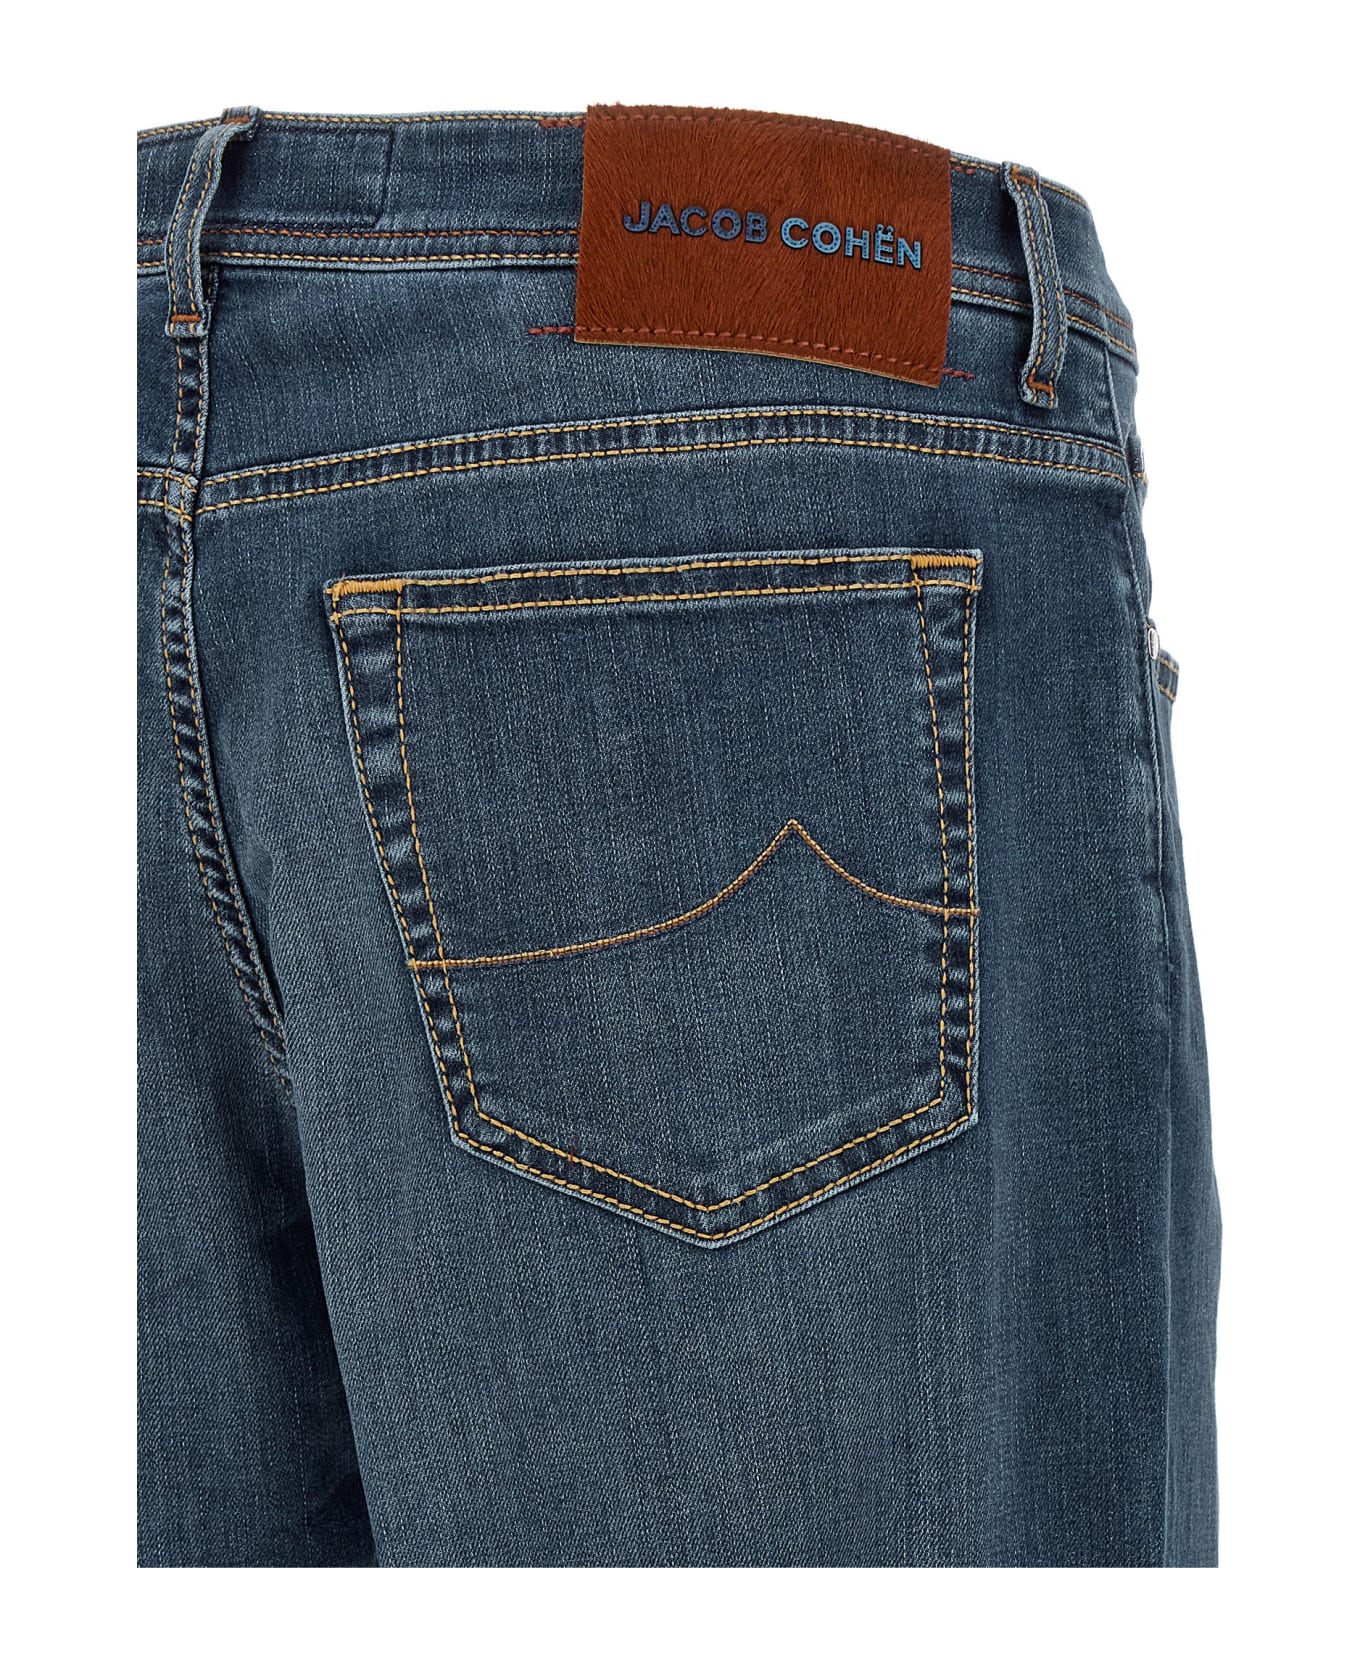 Jacob Cohen 'bard' Jeans - Blue